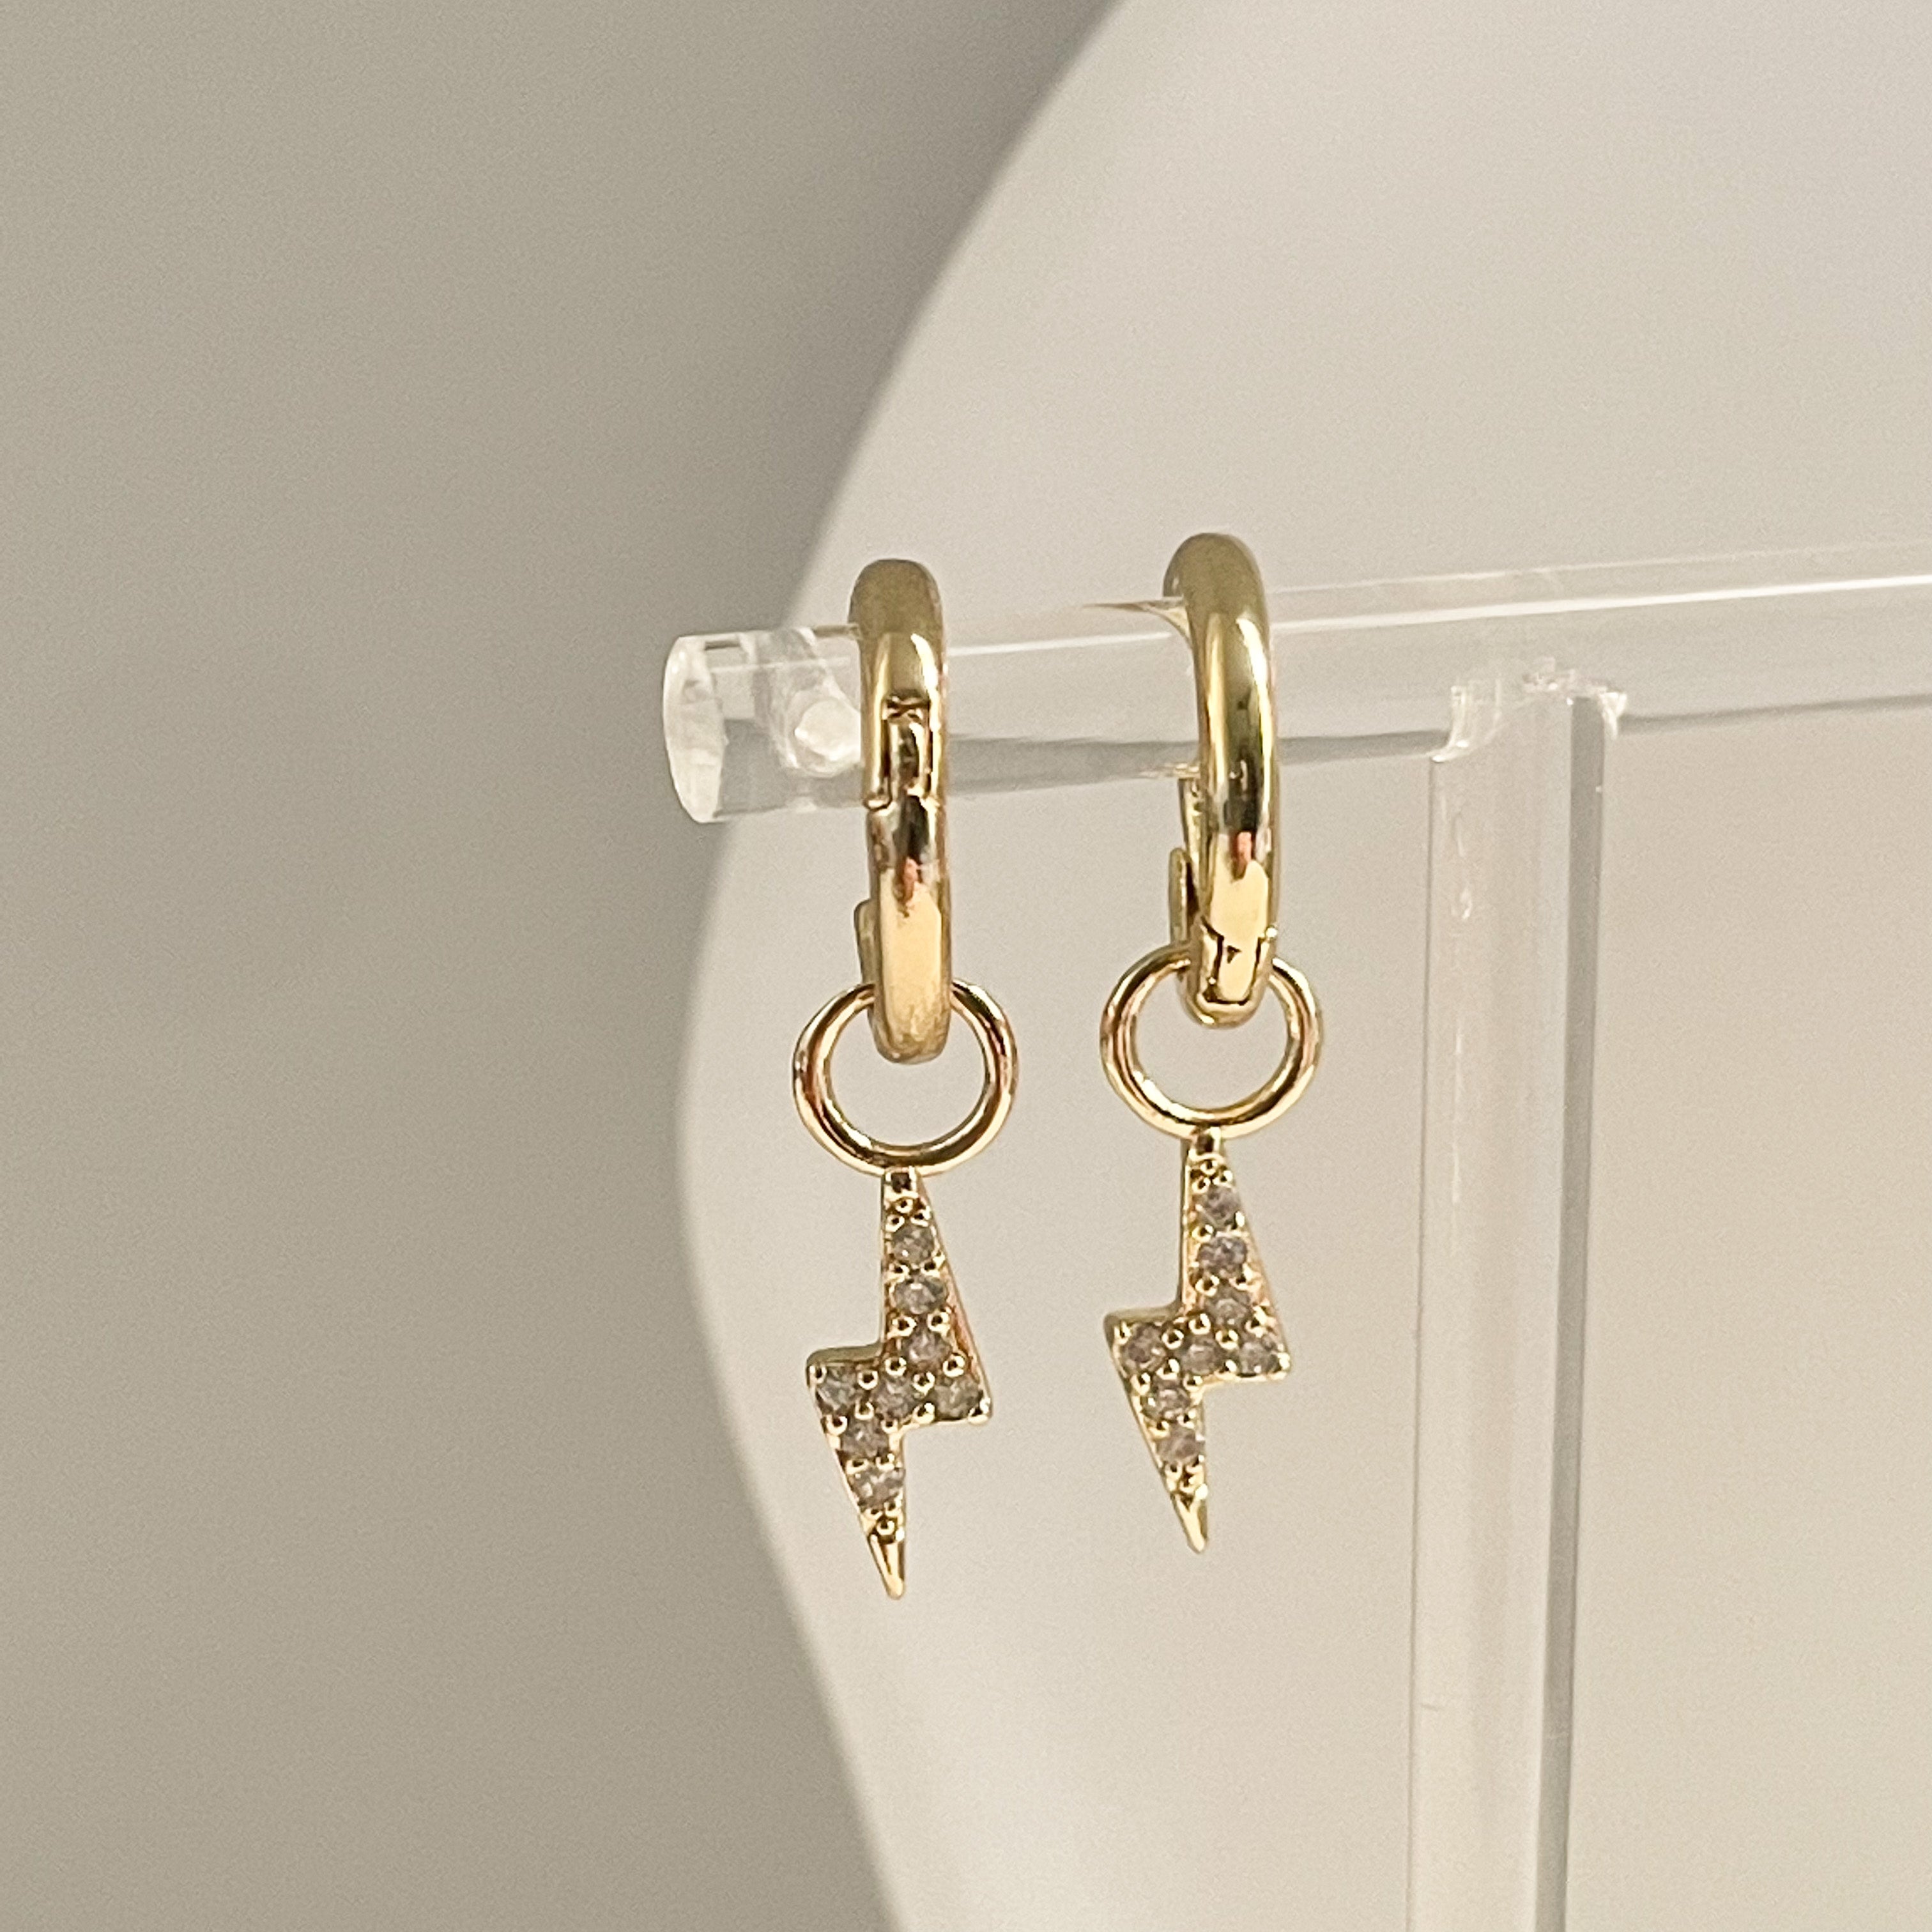 Little gold earrings hoops